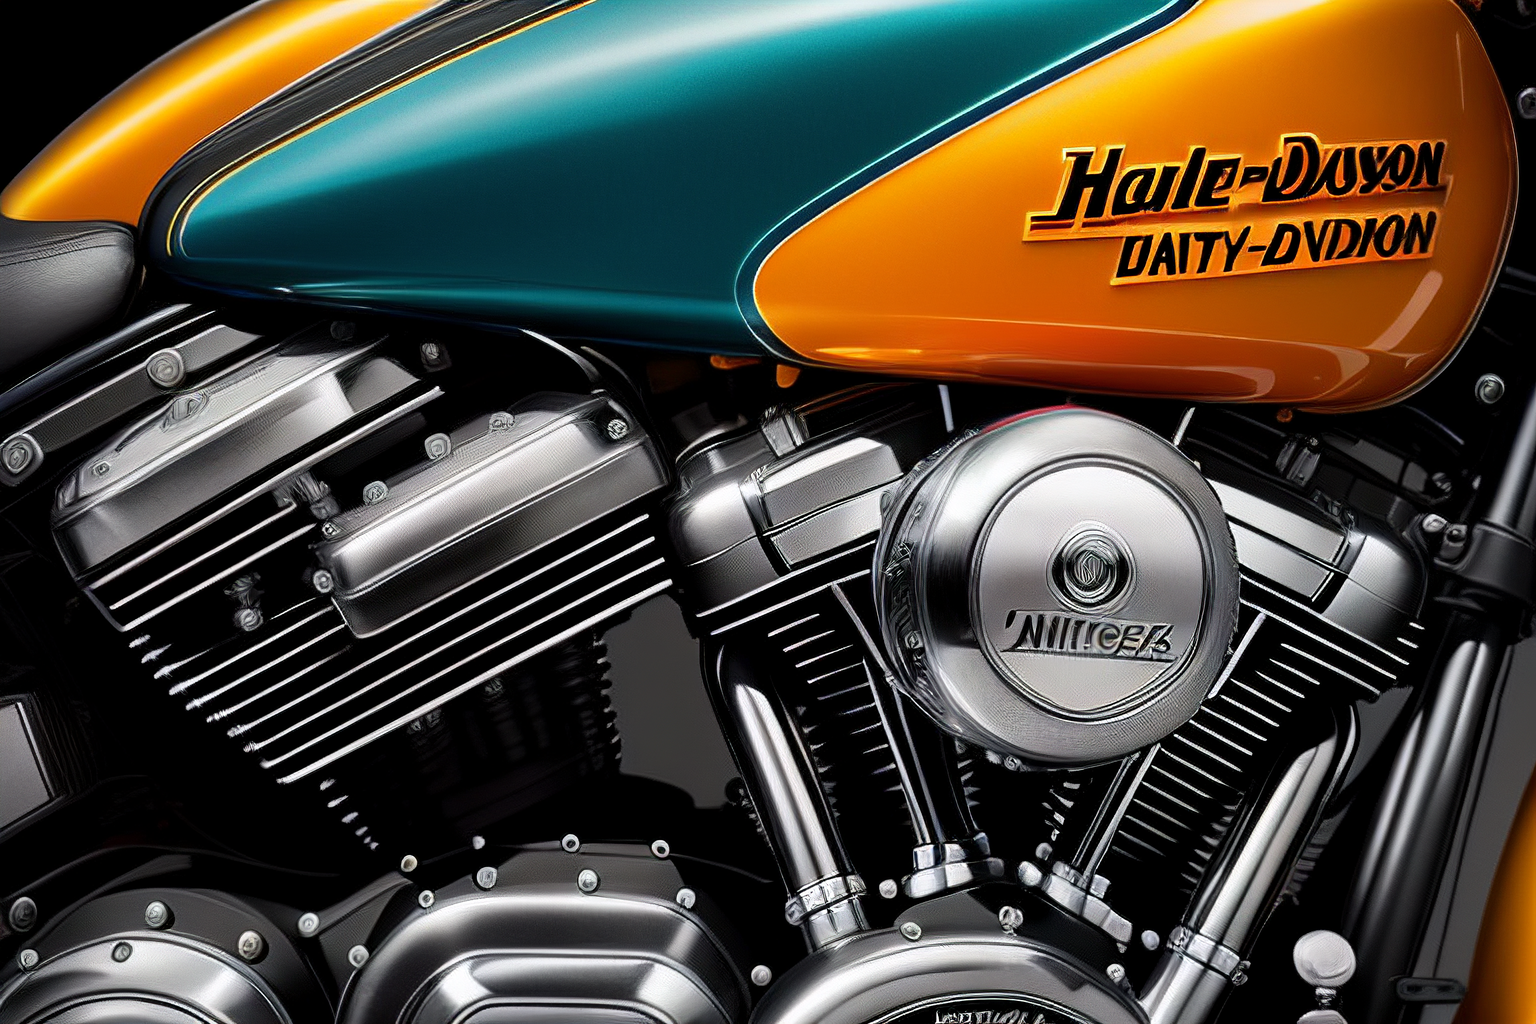 Harley Davidson Voltage Regulator Problems: Causes